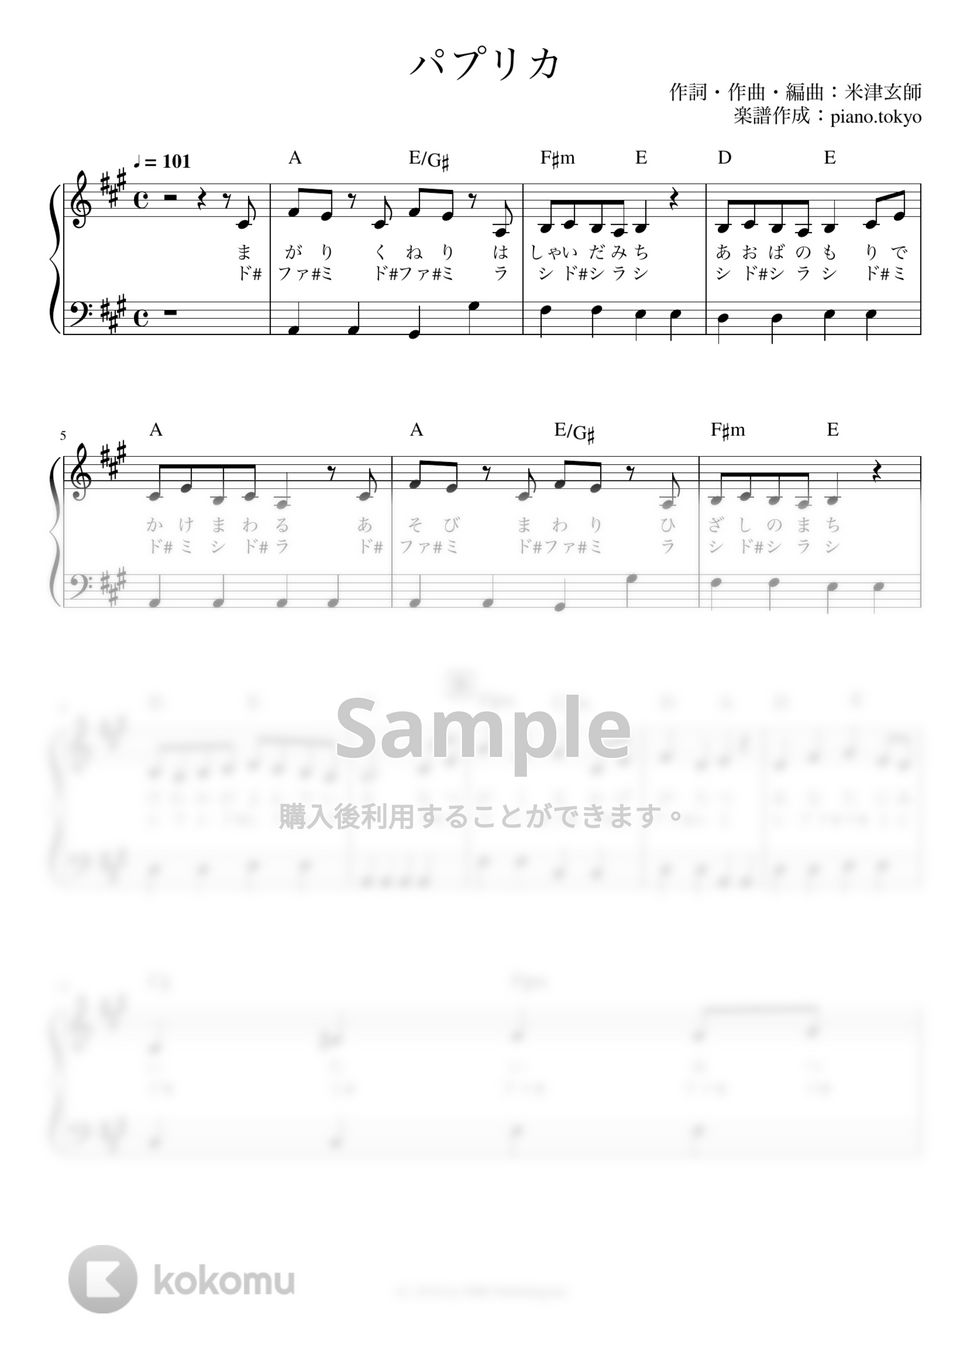  - パプリカ (かんたん 歌詞付き ドレミ付き 初心者) by piano.tokyo